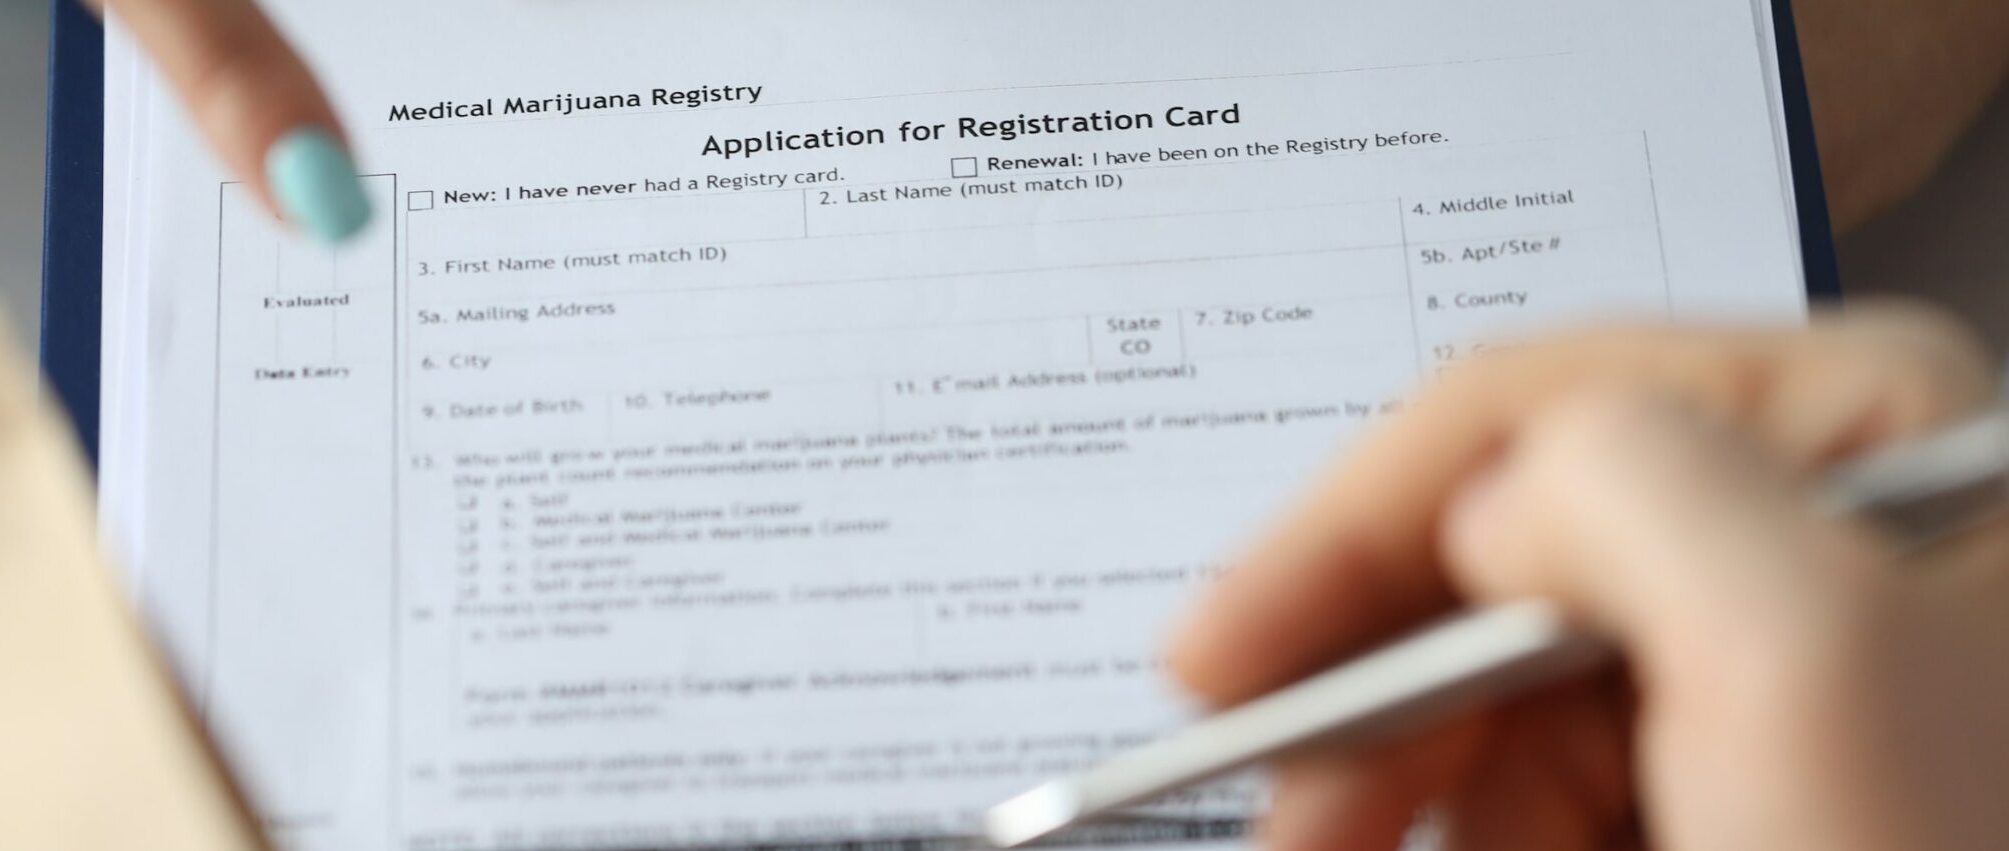 MM Registration form